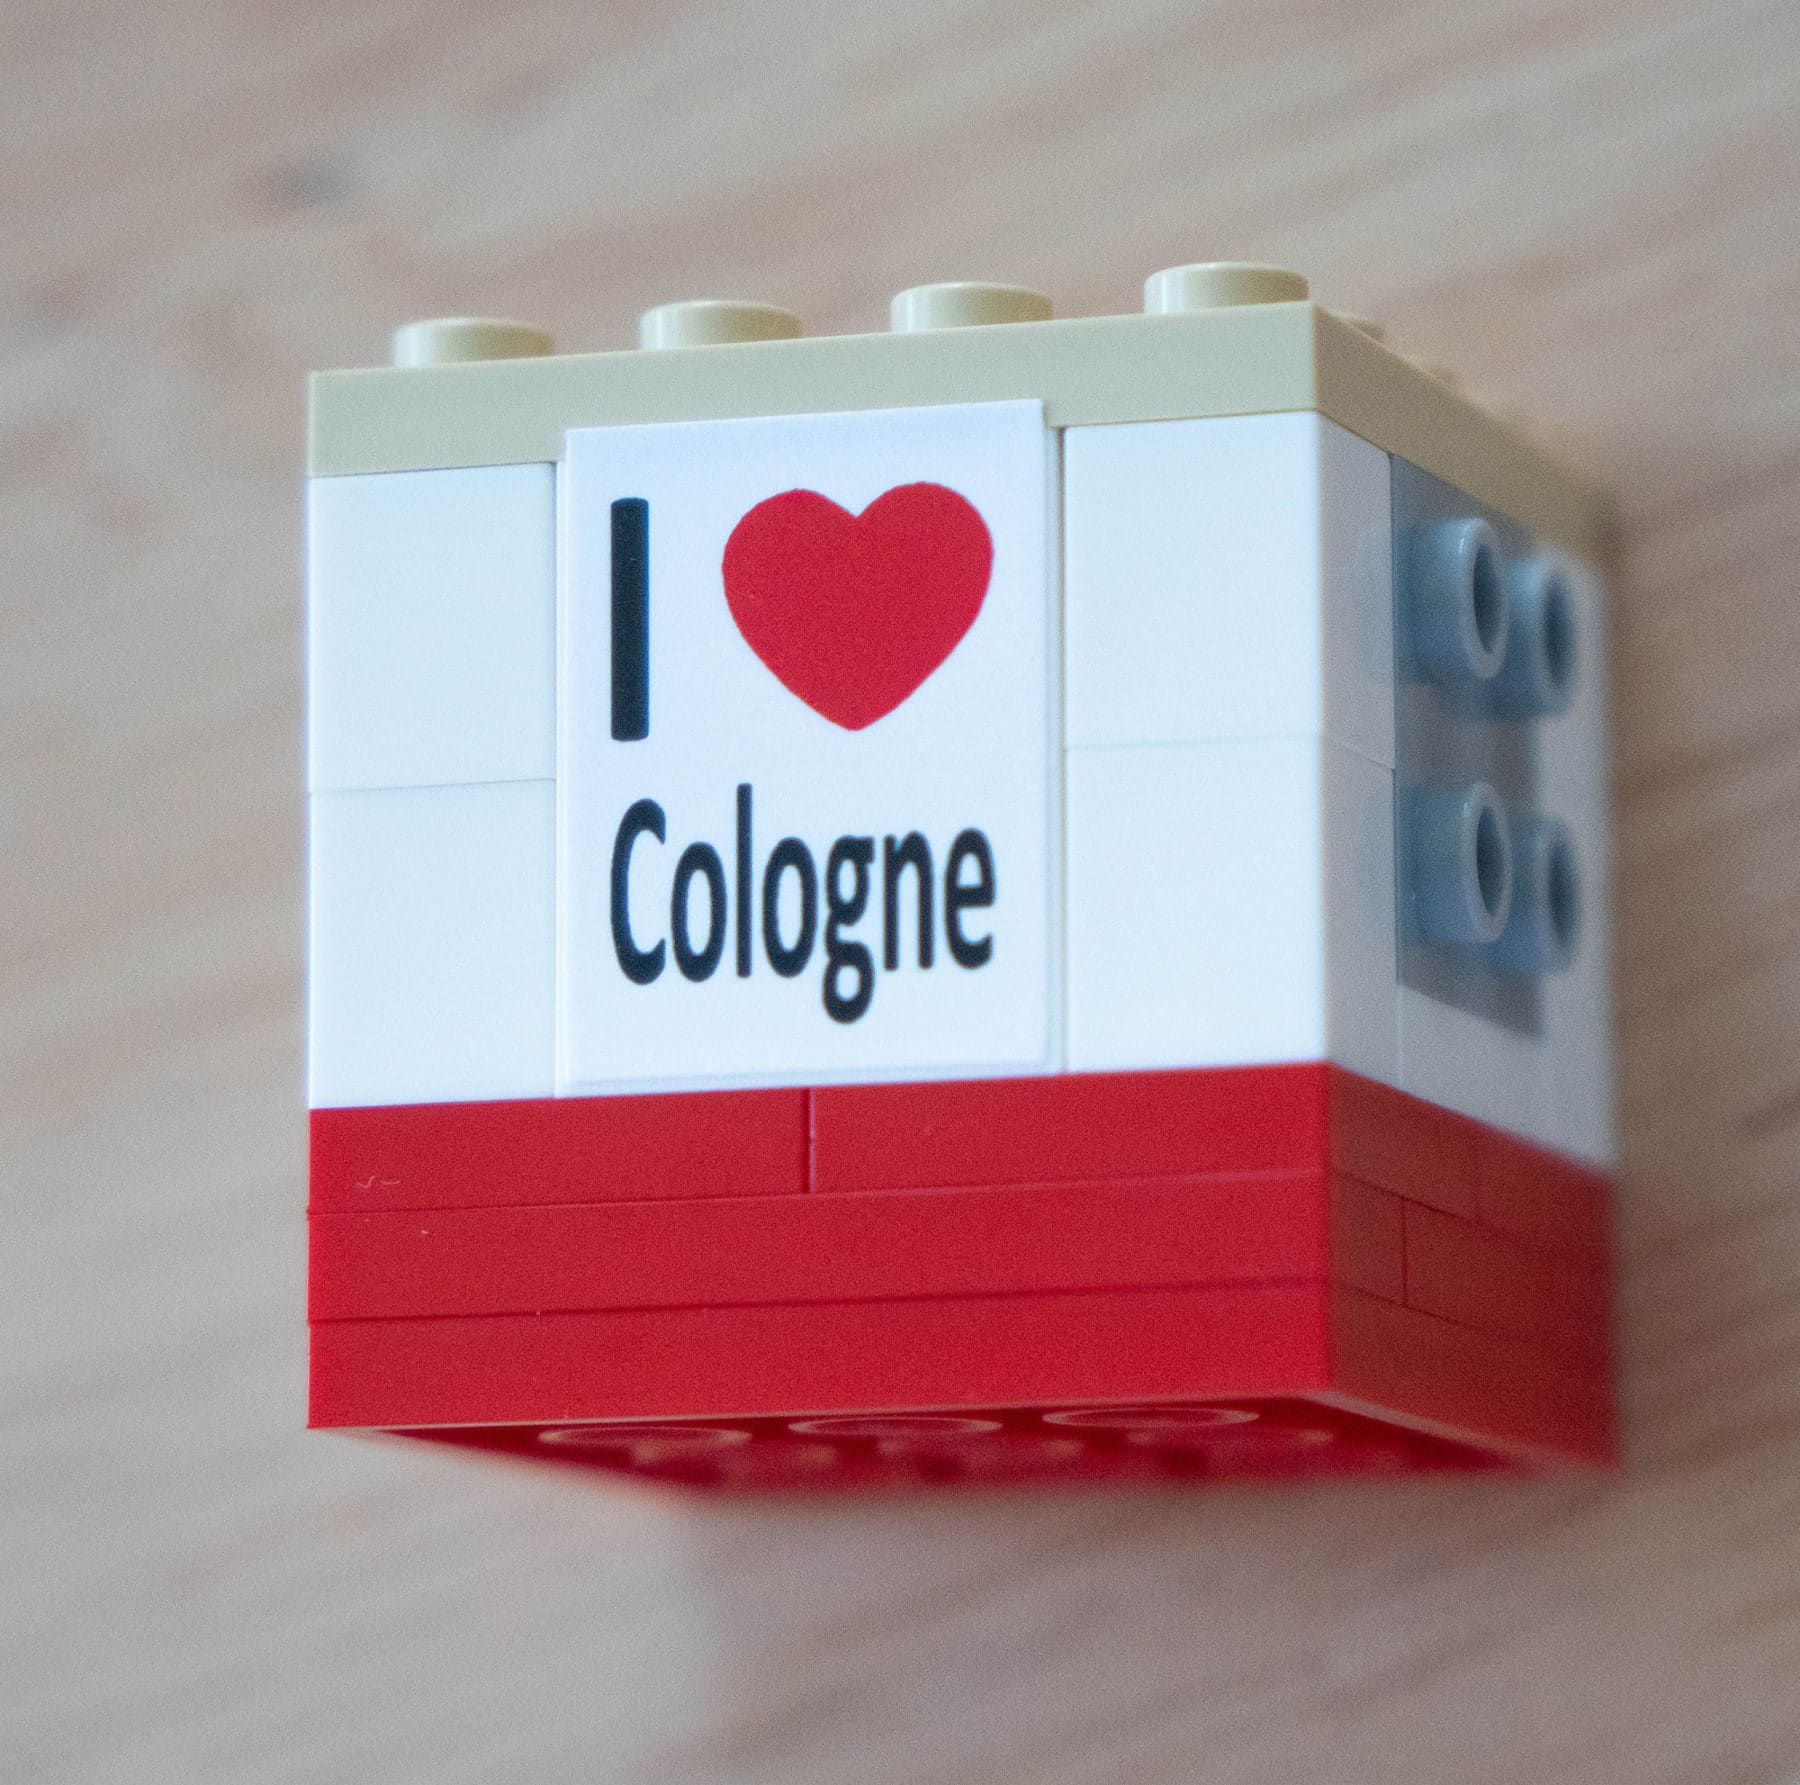 LEGO Cologne BrickHeadz 6302766 Review